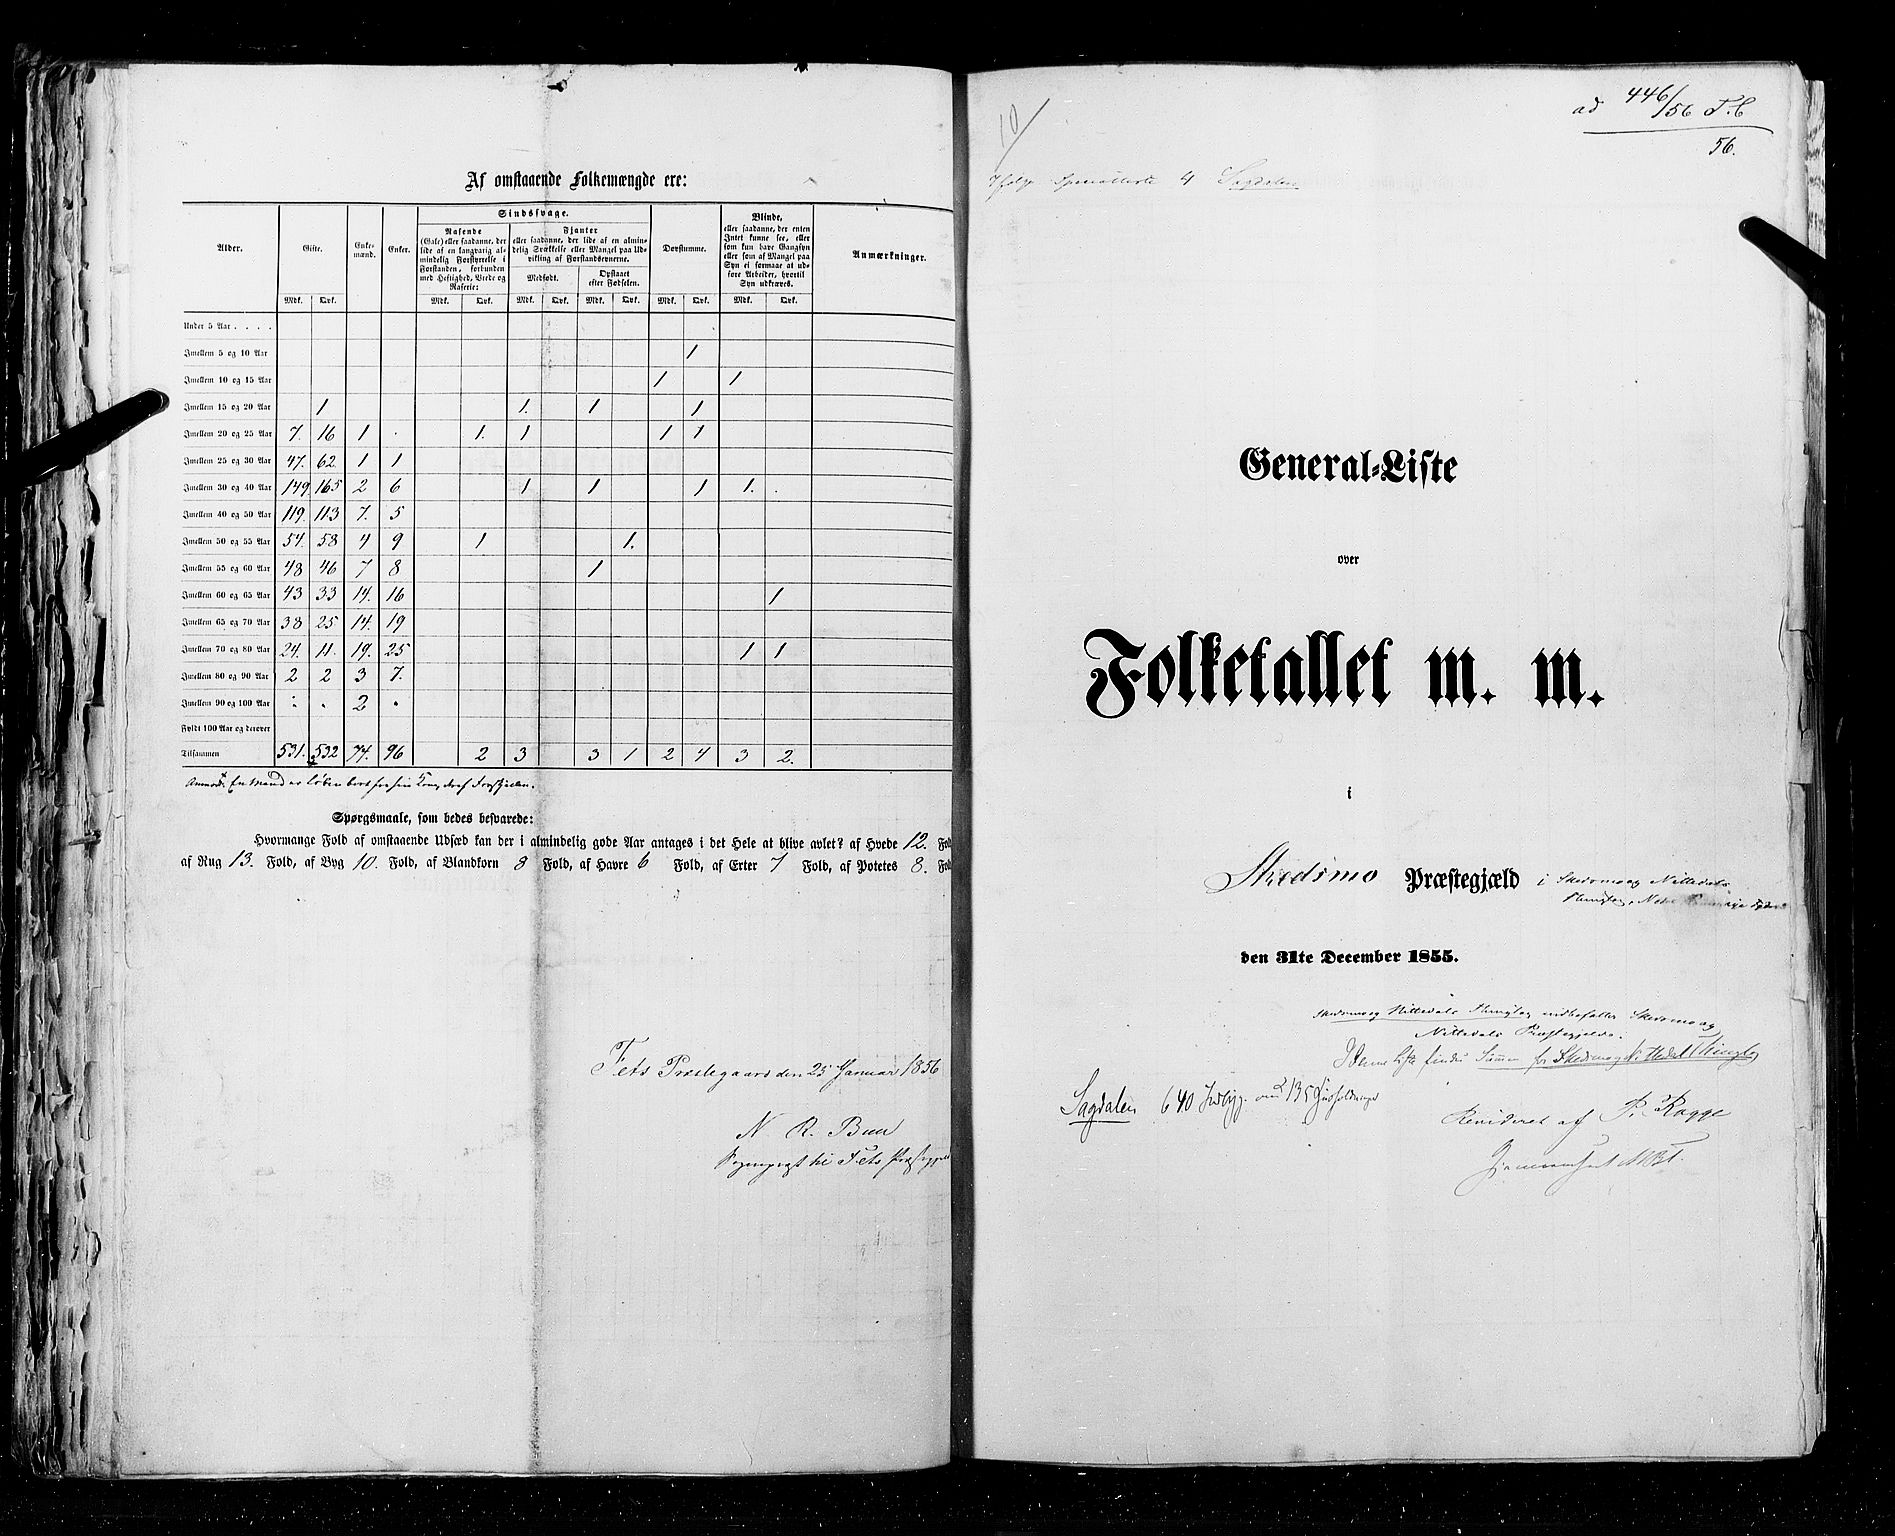 RA, Folketellingen 1855, bind 1: Akershus amt, Smålenenes amt og Hedemarken amt, 1855, s. 56